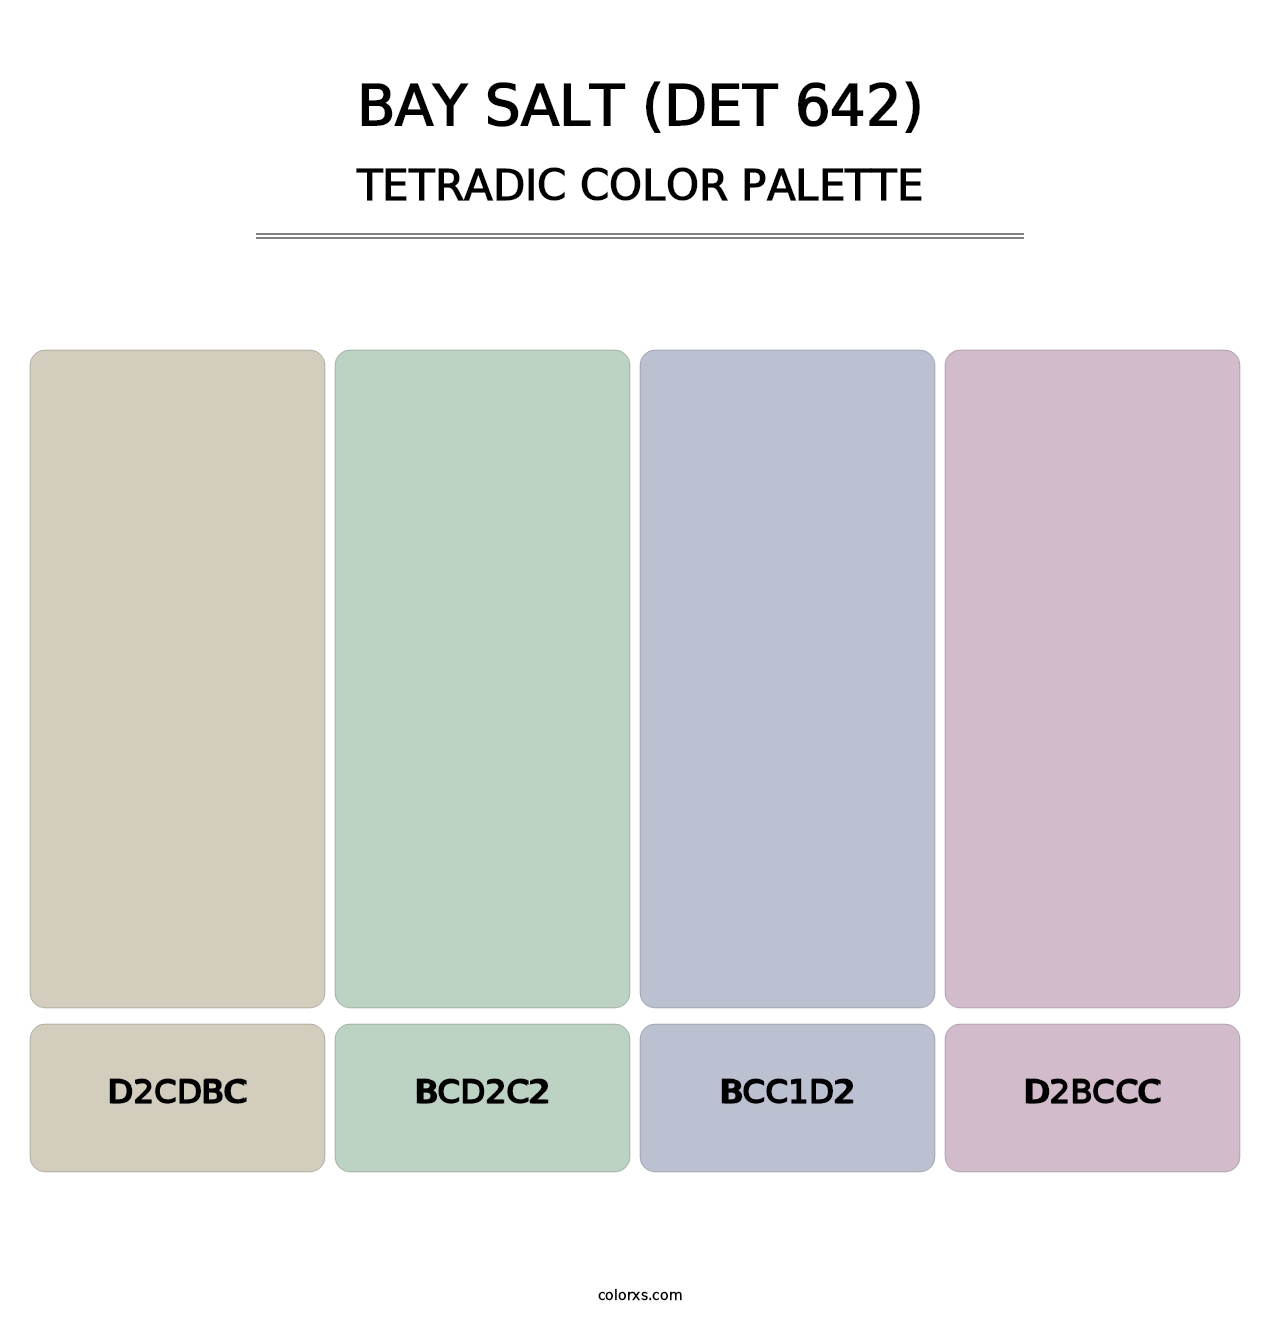 Bay Salt (DET 642) - Tetradic Color Palette